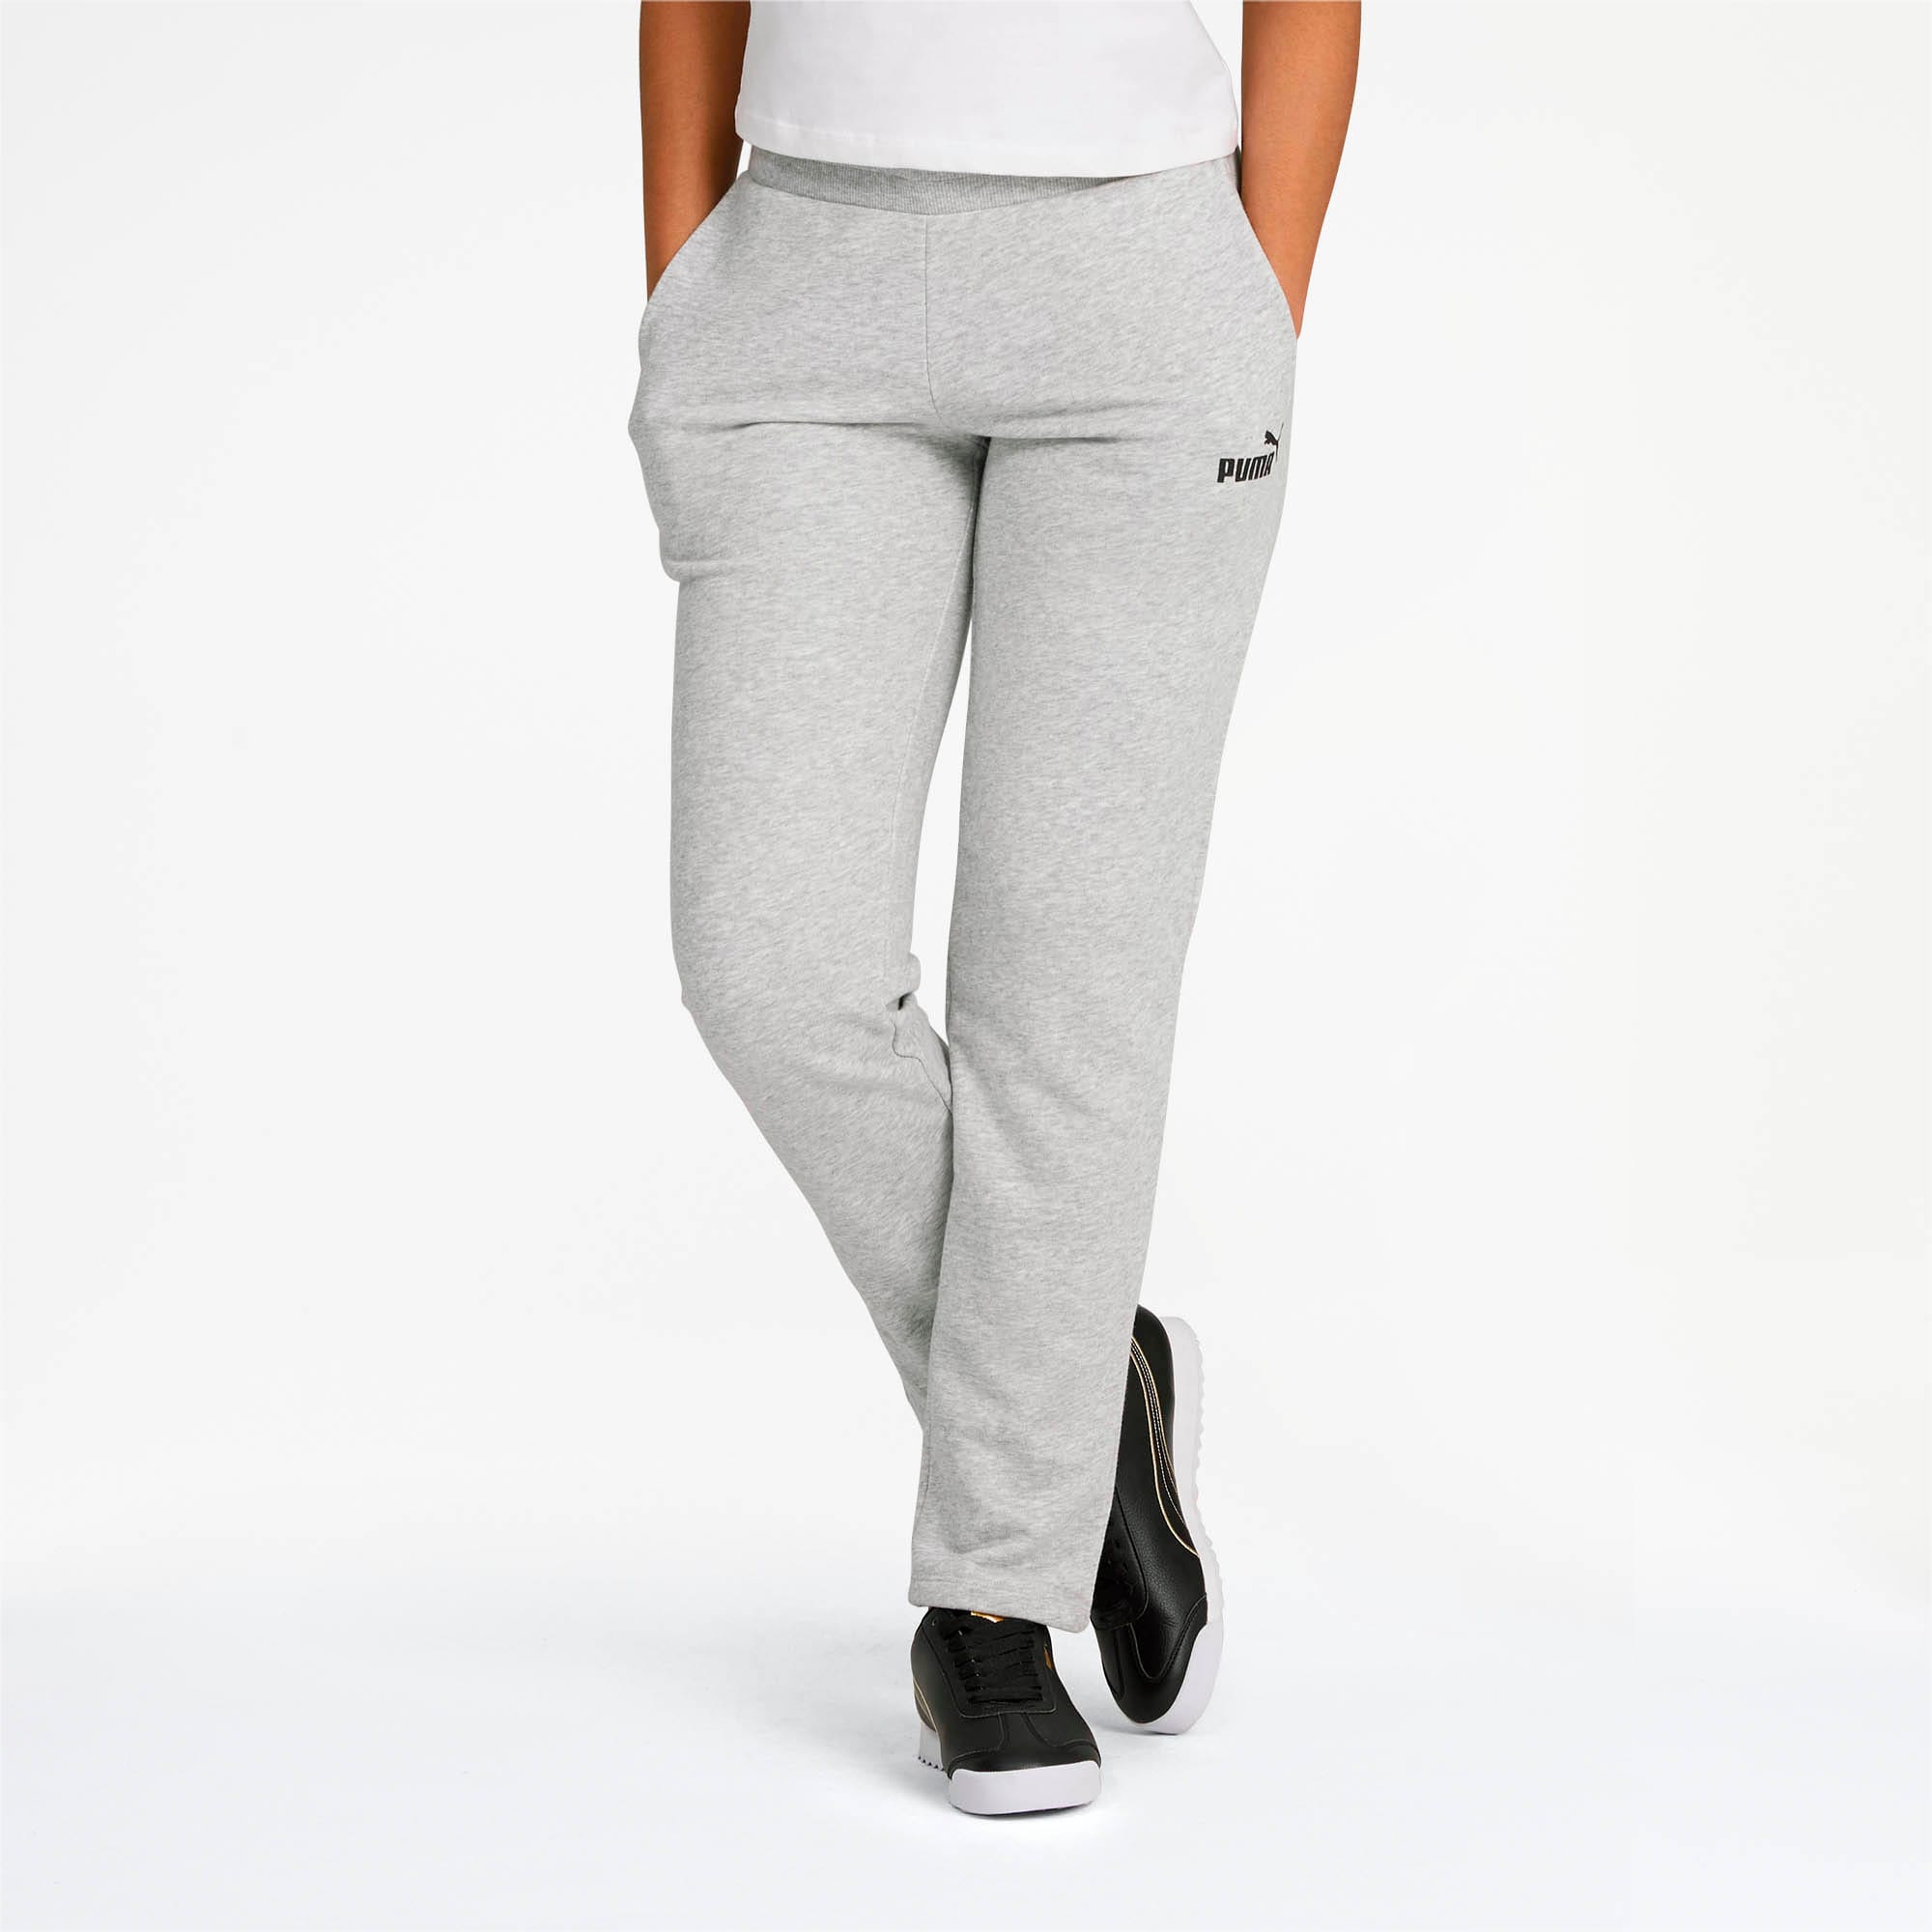 puma sweatpants womens grey